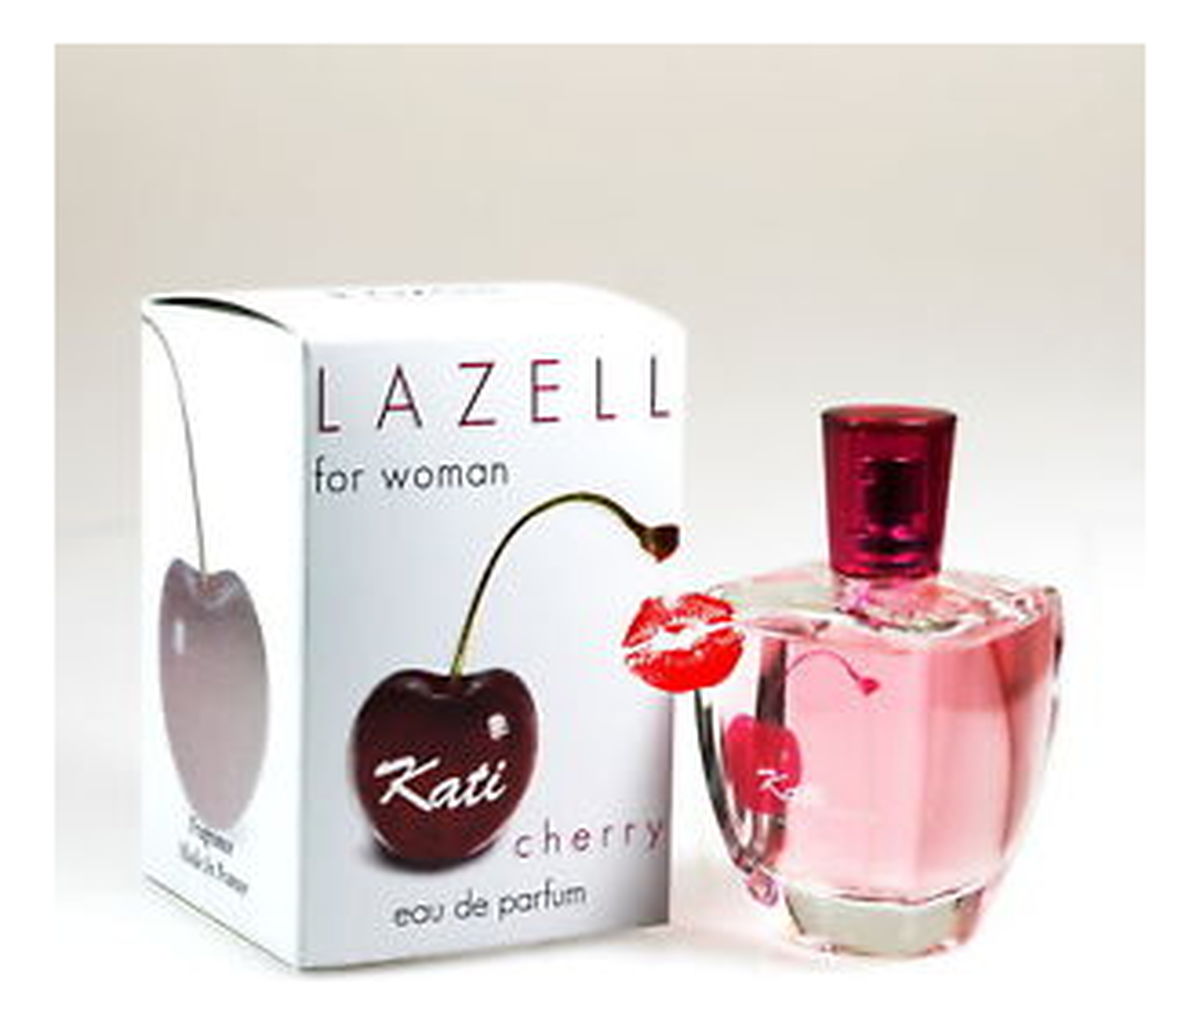 Lazell Kati Cherry Woda perfumowana dla kobiet